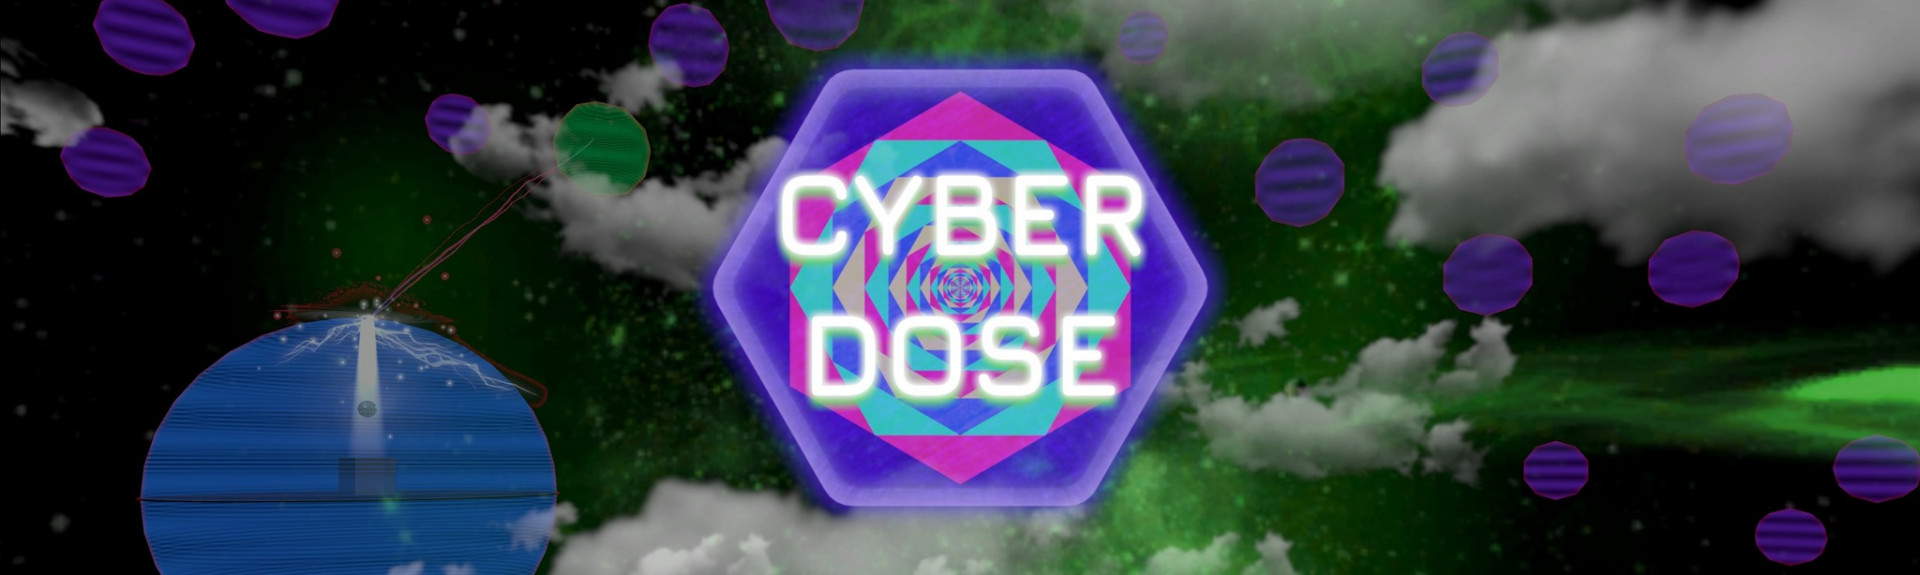 Cyber Dose